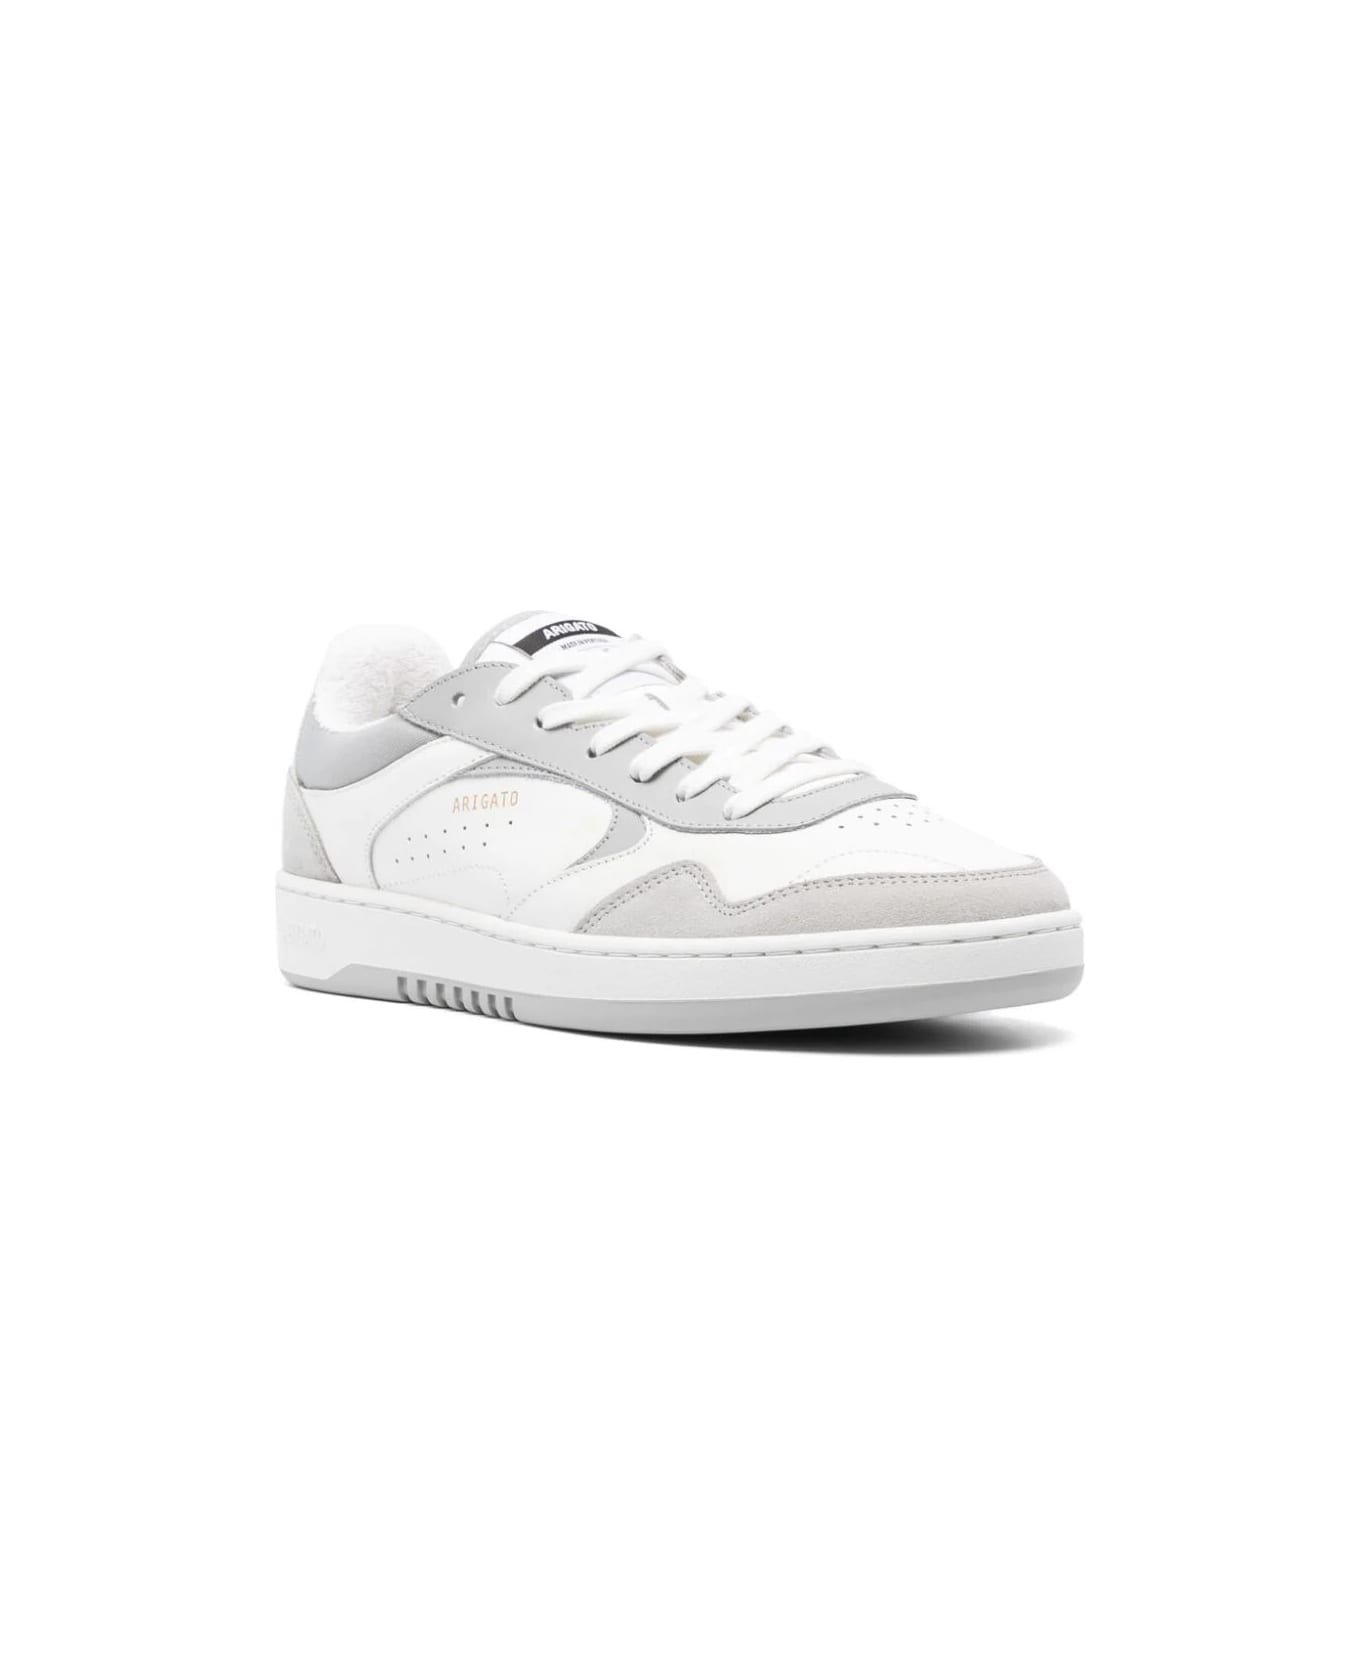 Axel Arigato Arlo Sneaker - White Light Grey スニーカー